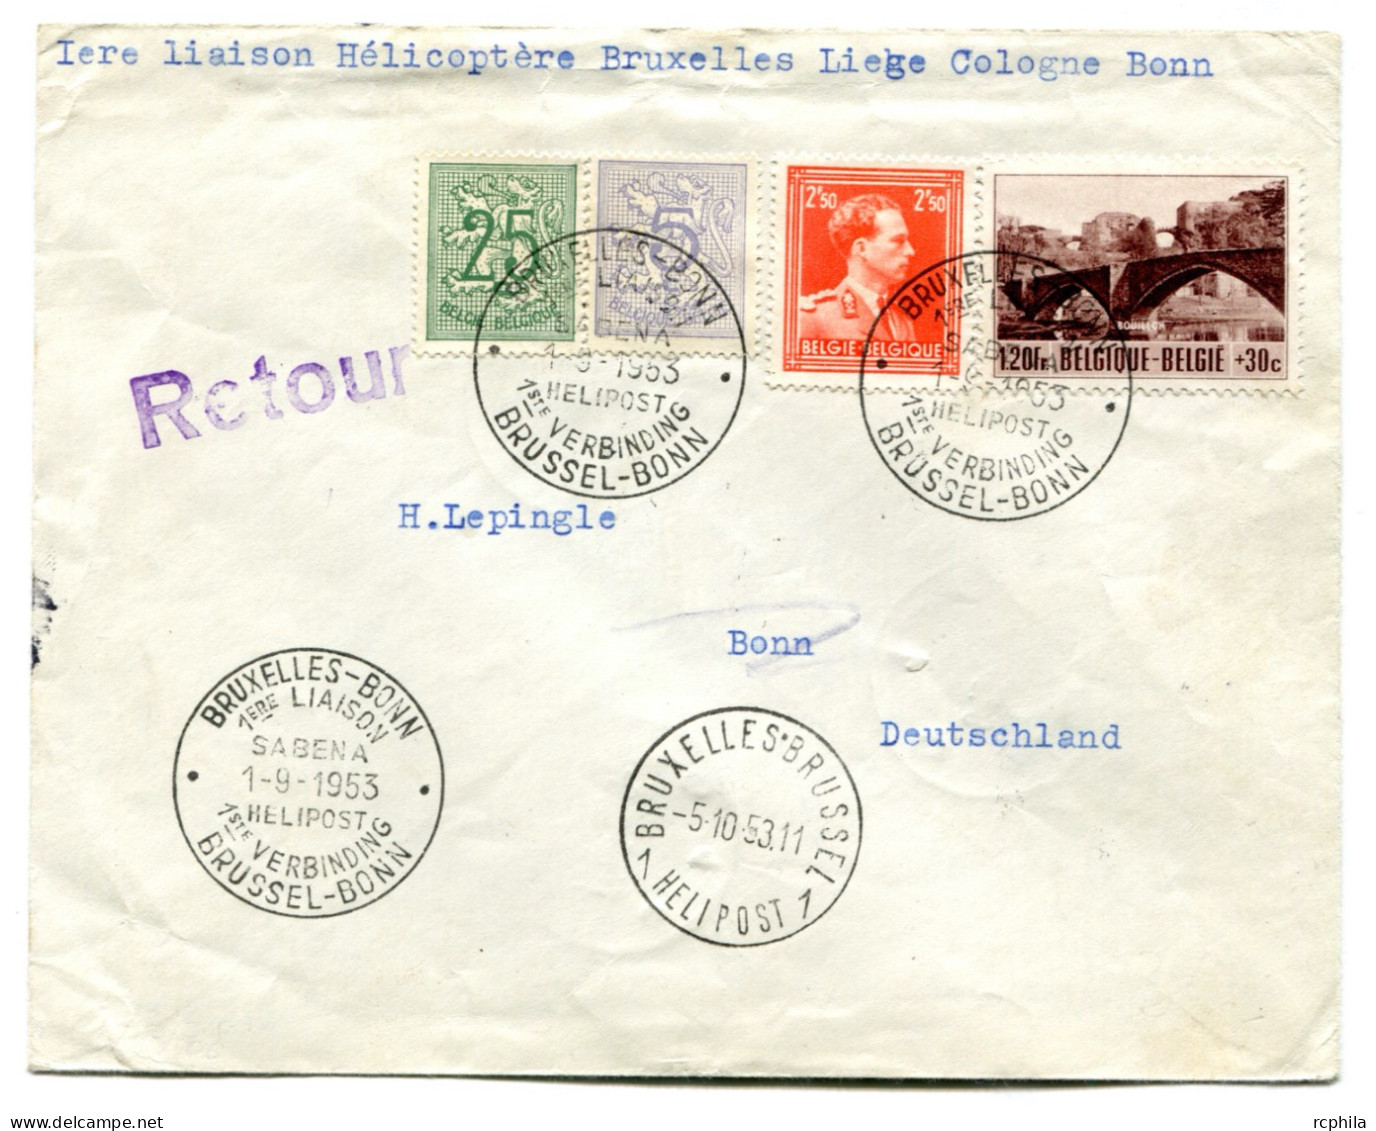 RC 24905 BELGIQUE 1953 1ere LIAISON HELICOPTERE BRUXELLES LIEGE COLOGNE BONN LETTRE POUR L' ALLEMAGNE - Briefe U. Dokumente